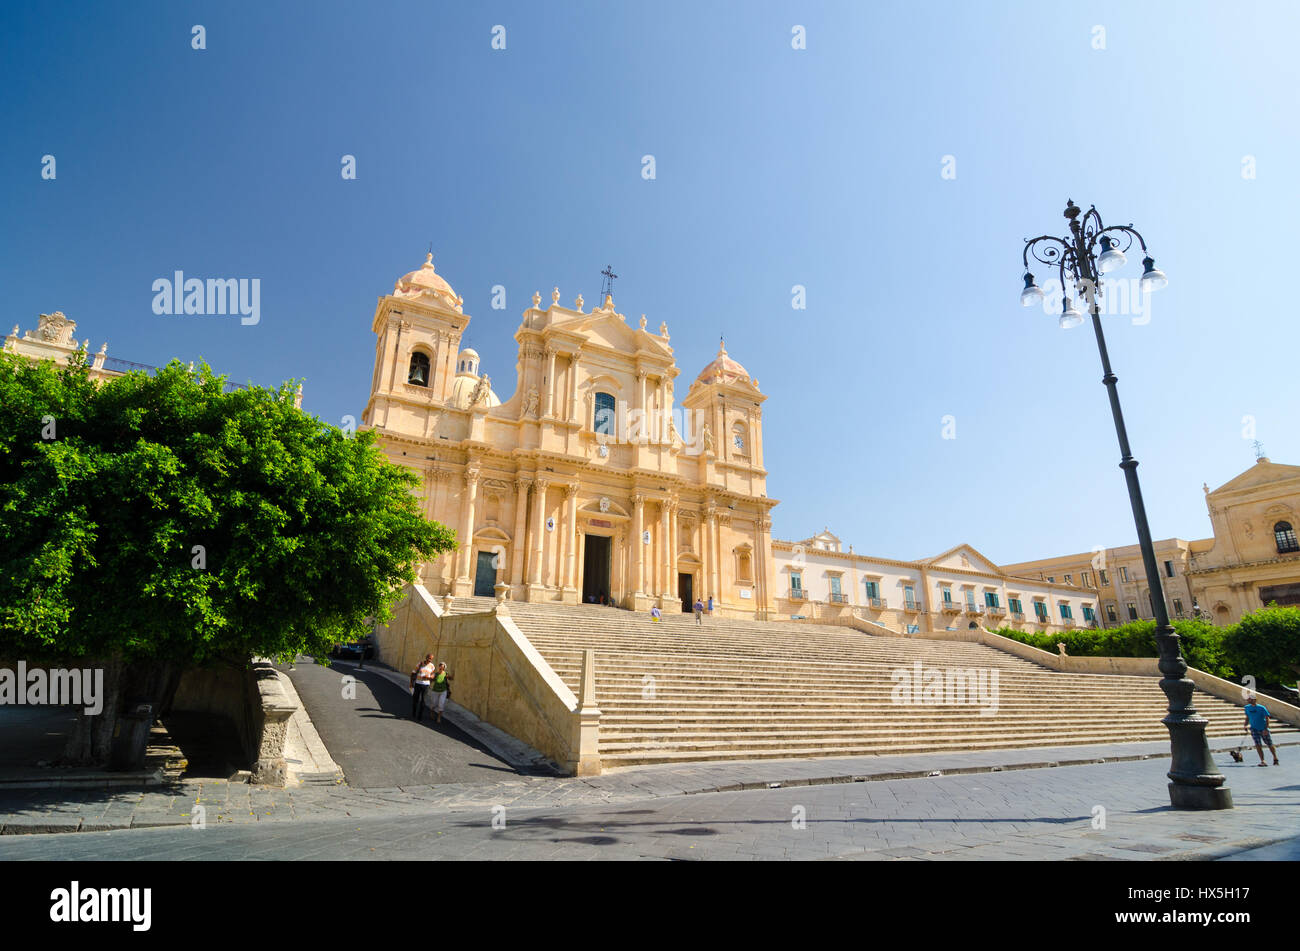 Noto, Italien - 14. September 2015: Kathedrale von Noto, La Chiesa Madre di San Nicolo ist eine römisch-katholische Kathedrale in Noto auf Sizilien, Italien. Gebaut in der s Stockfoto